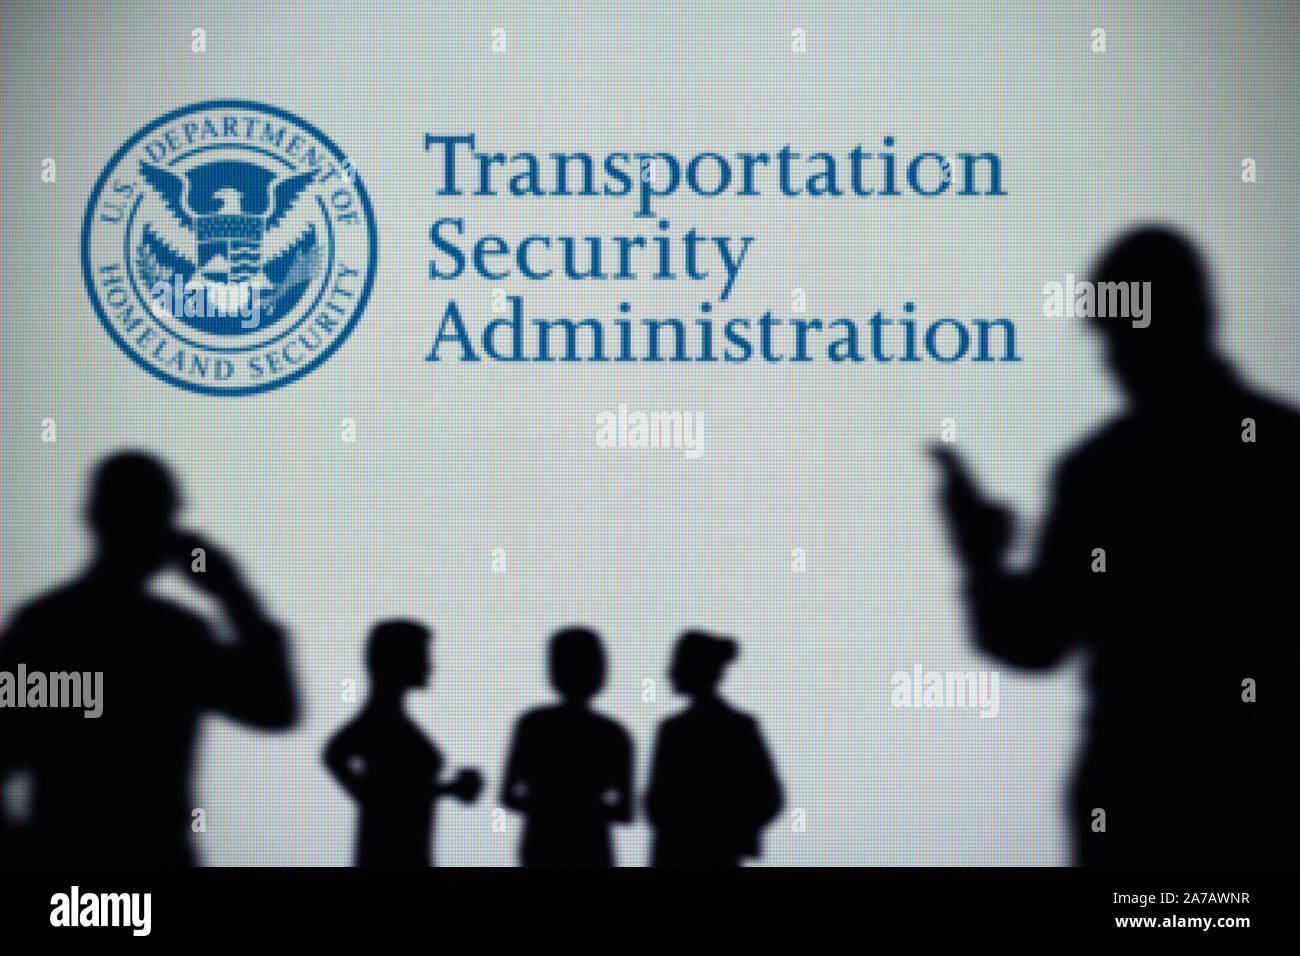 Logo de l'Administration de la sécurité des transports est vu sur un écran à l'arrière-plan tandis qu'une silhouette personne utilise un smartphone (usage éditorial uniquement). Banque D'Images